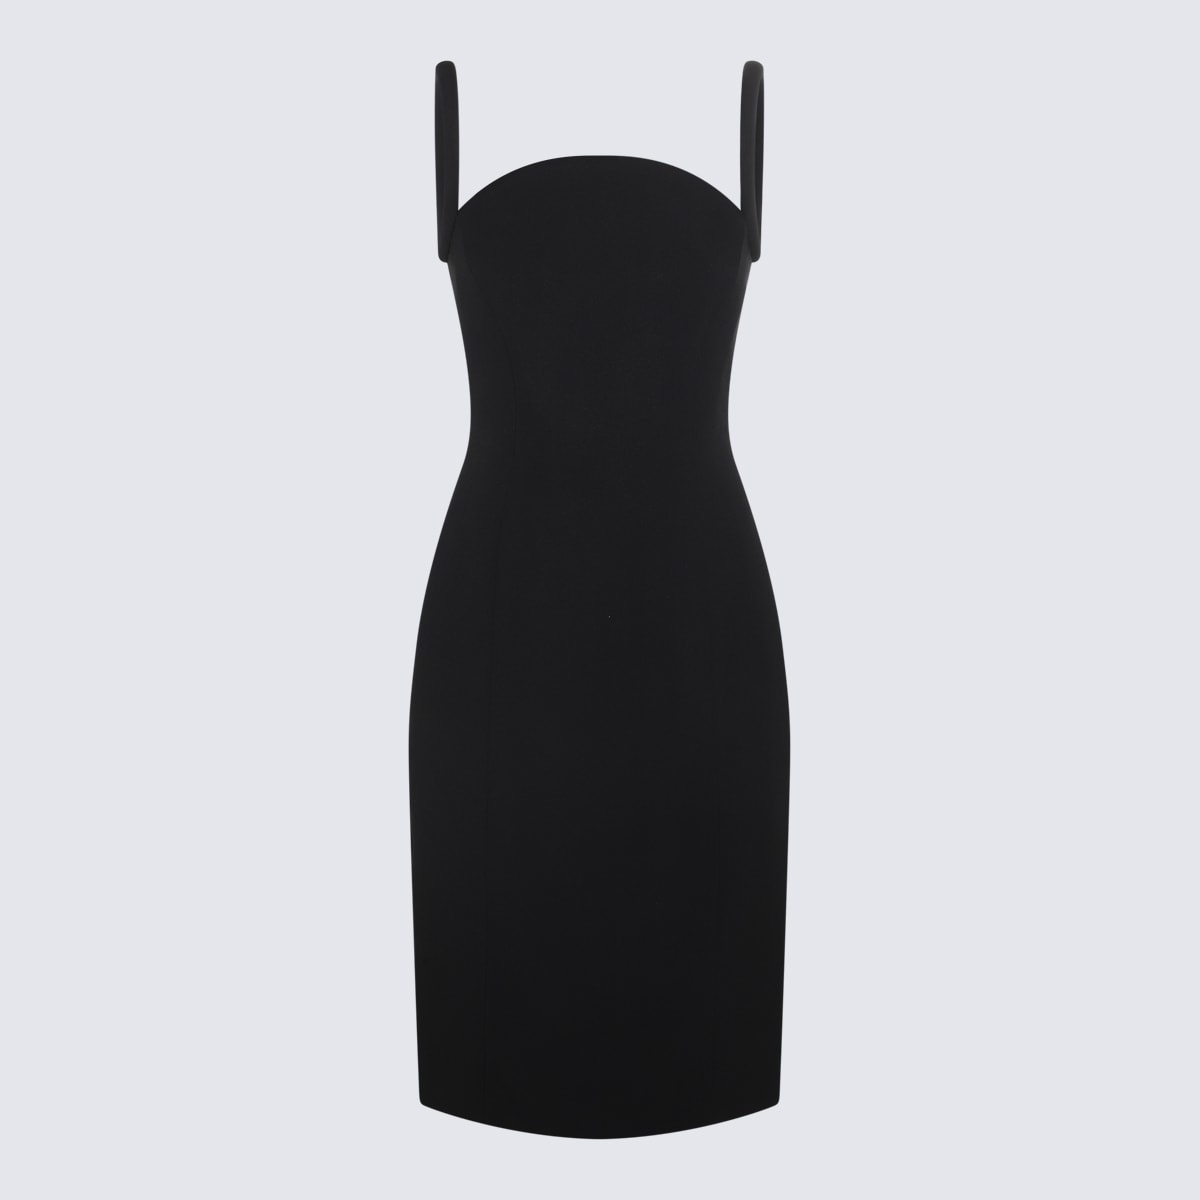 Versace Black Viscose Blend Sleeveless Dress